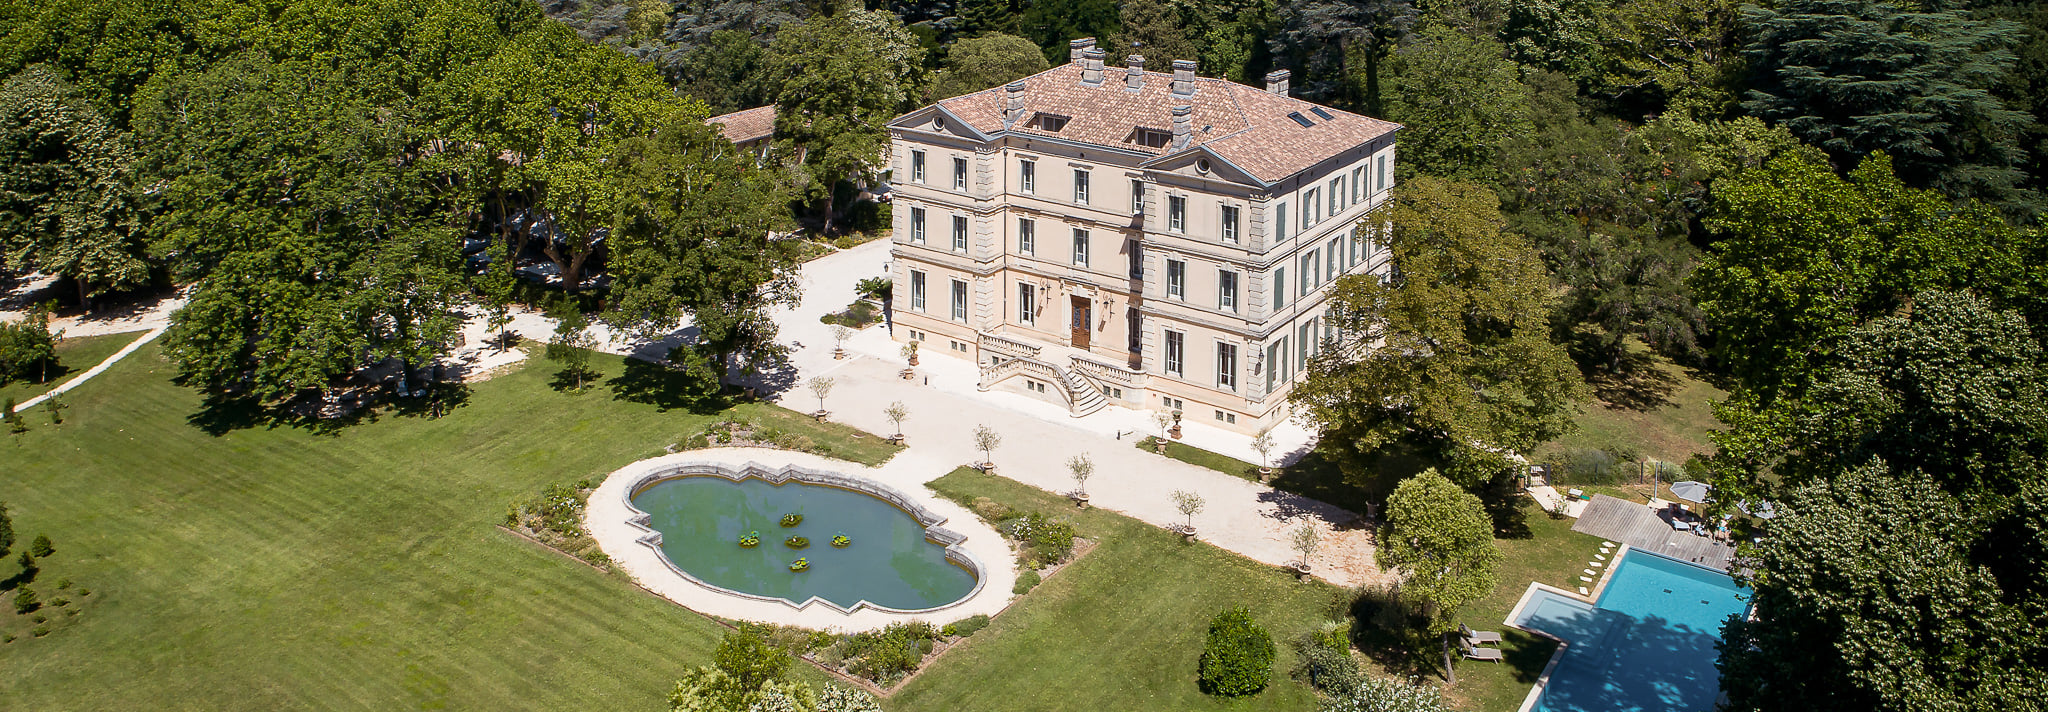 Vue aérienne sur le Château de Montcaud, hôtel en Provence, avec son parc et sa piscine